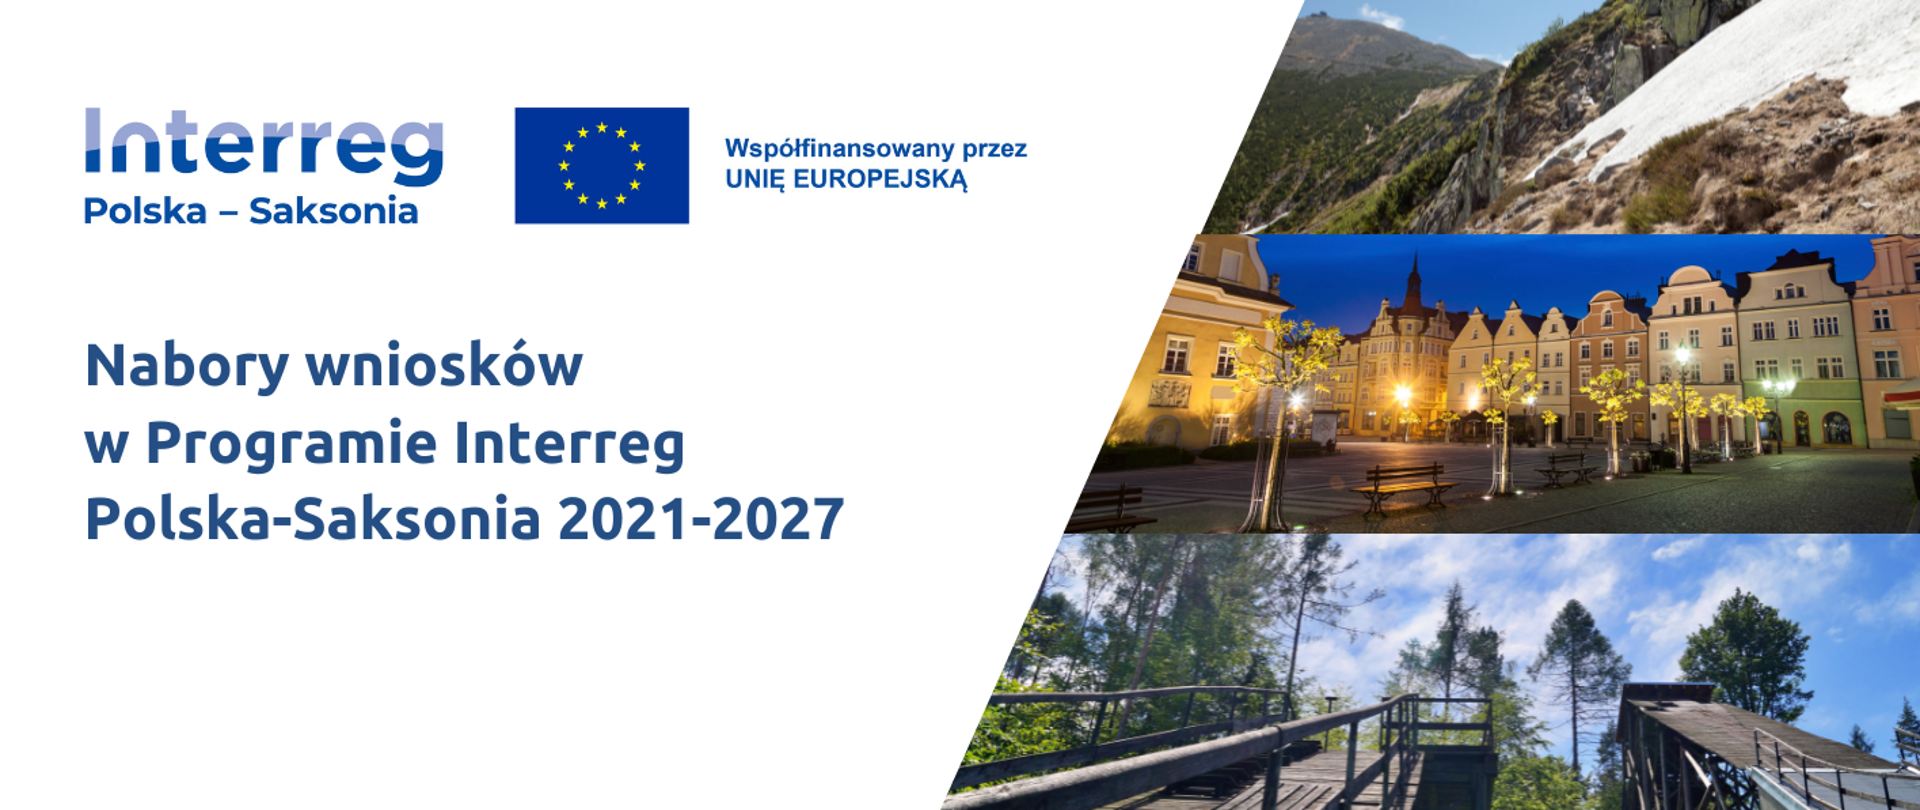 kolejny nabór na projekty w Programie Interreg Polska–Saksonia 2021-2027